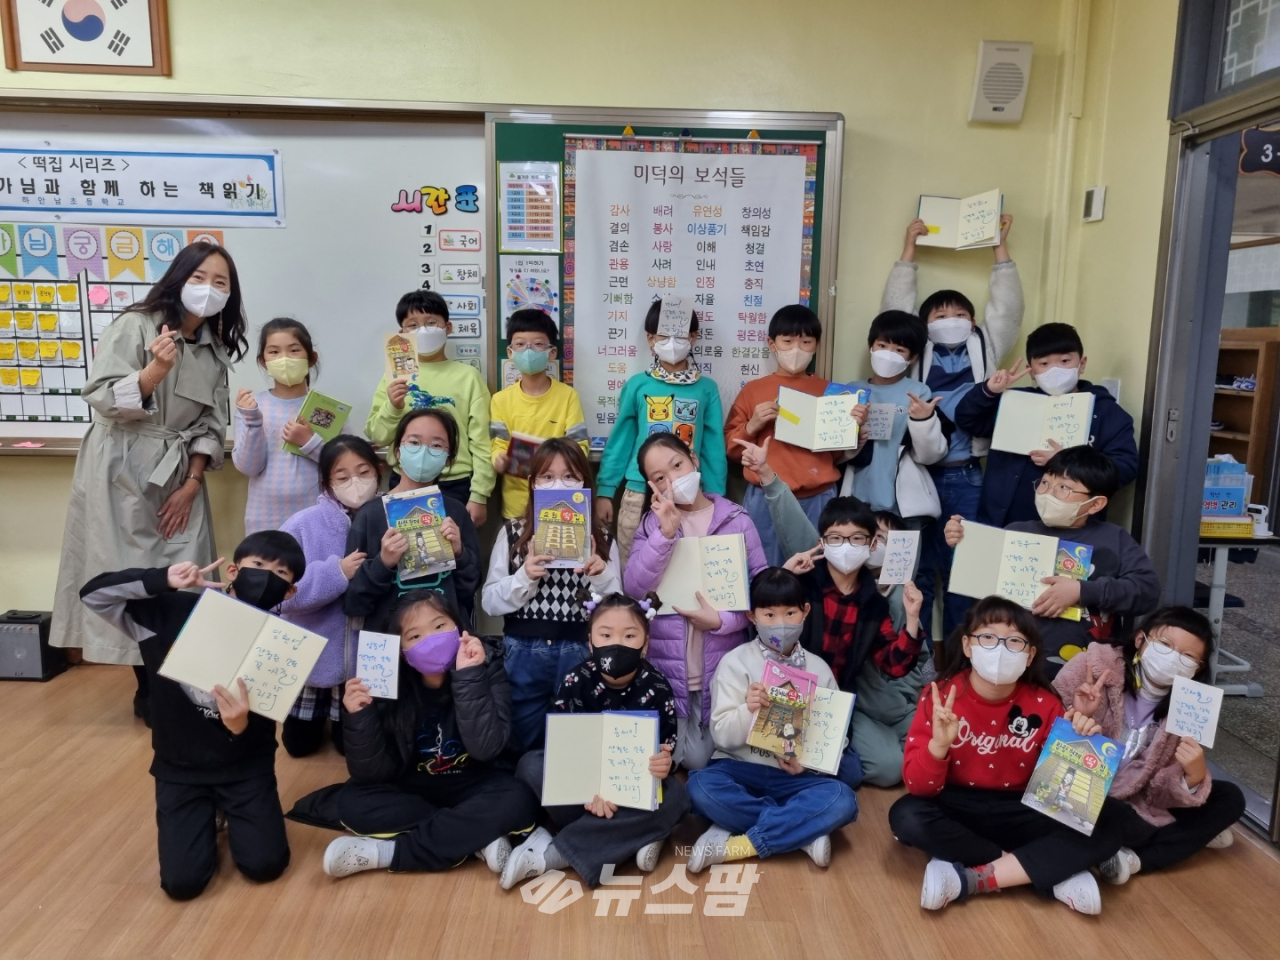 @지난 11월 25일 경기도 광명 소재 하안남초등학교 3학년 학생 전체는 [만복이네 떡집] 시리즈를 쓴 김리리 작가와의 만남을 가졌다.